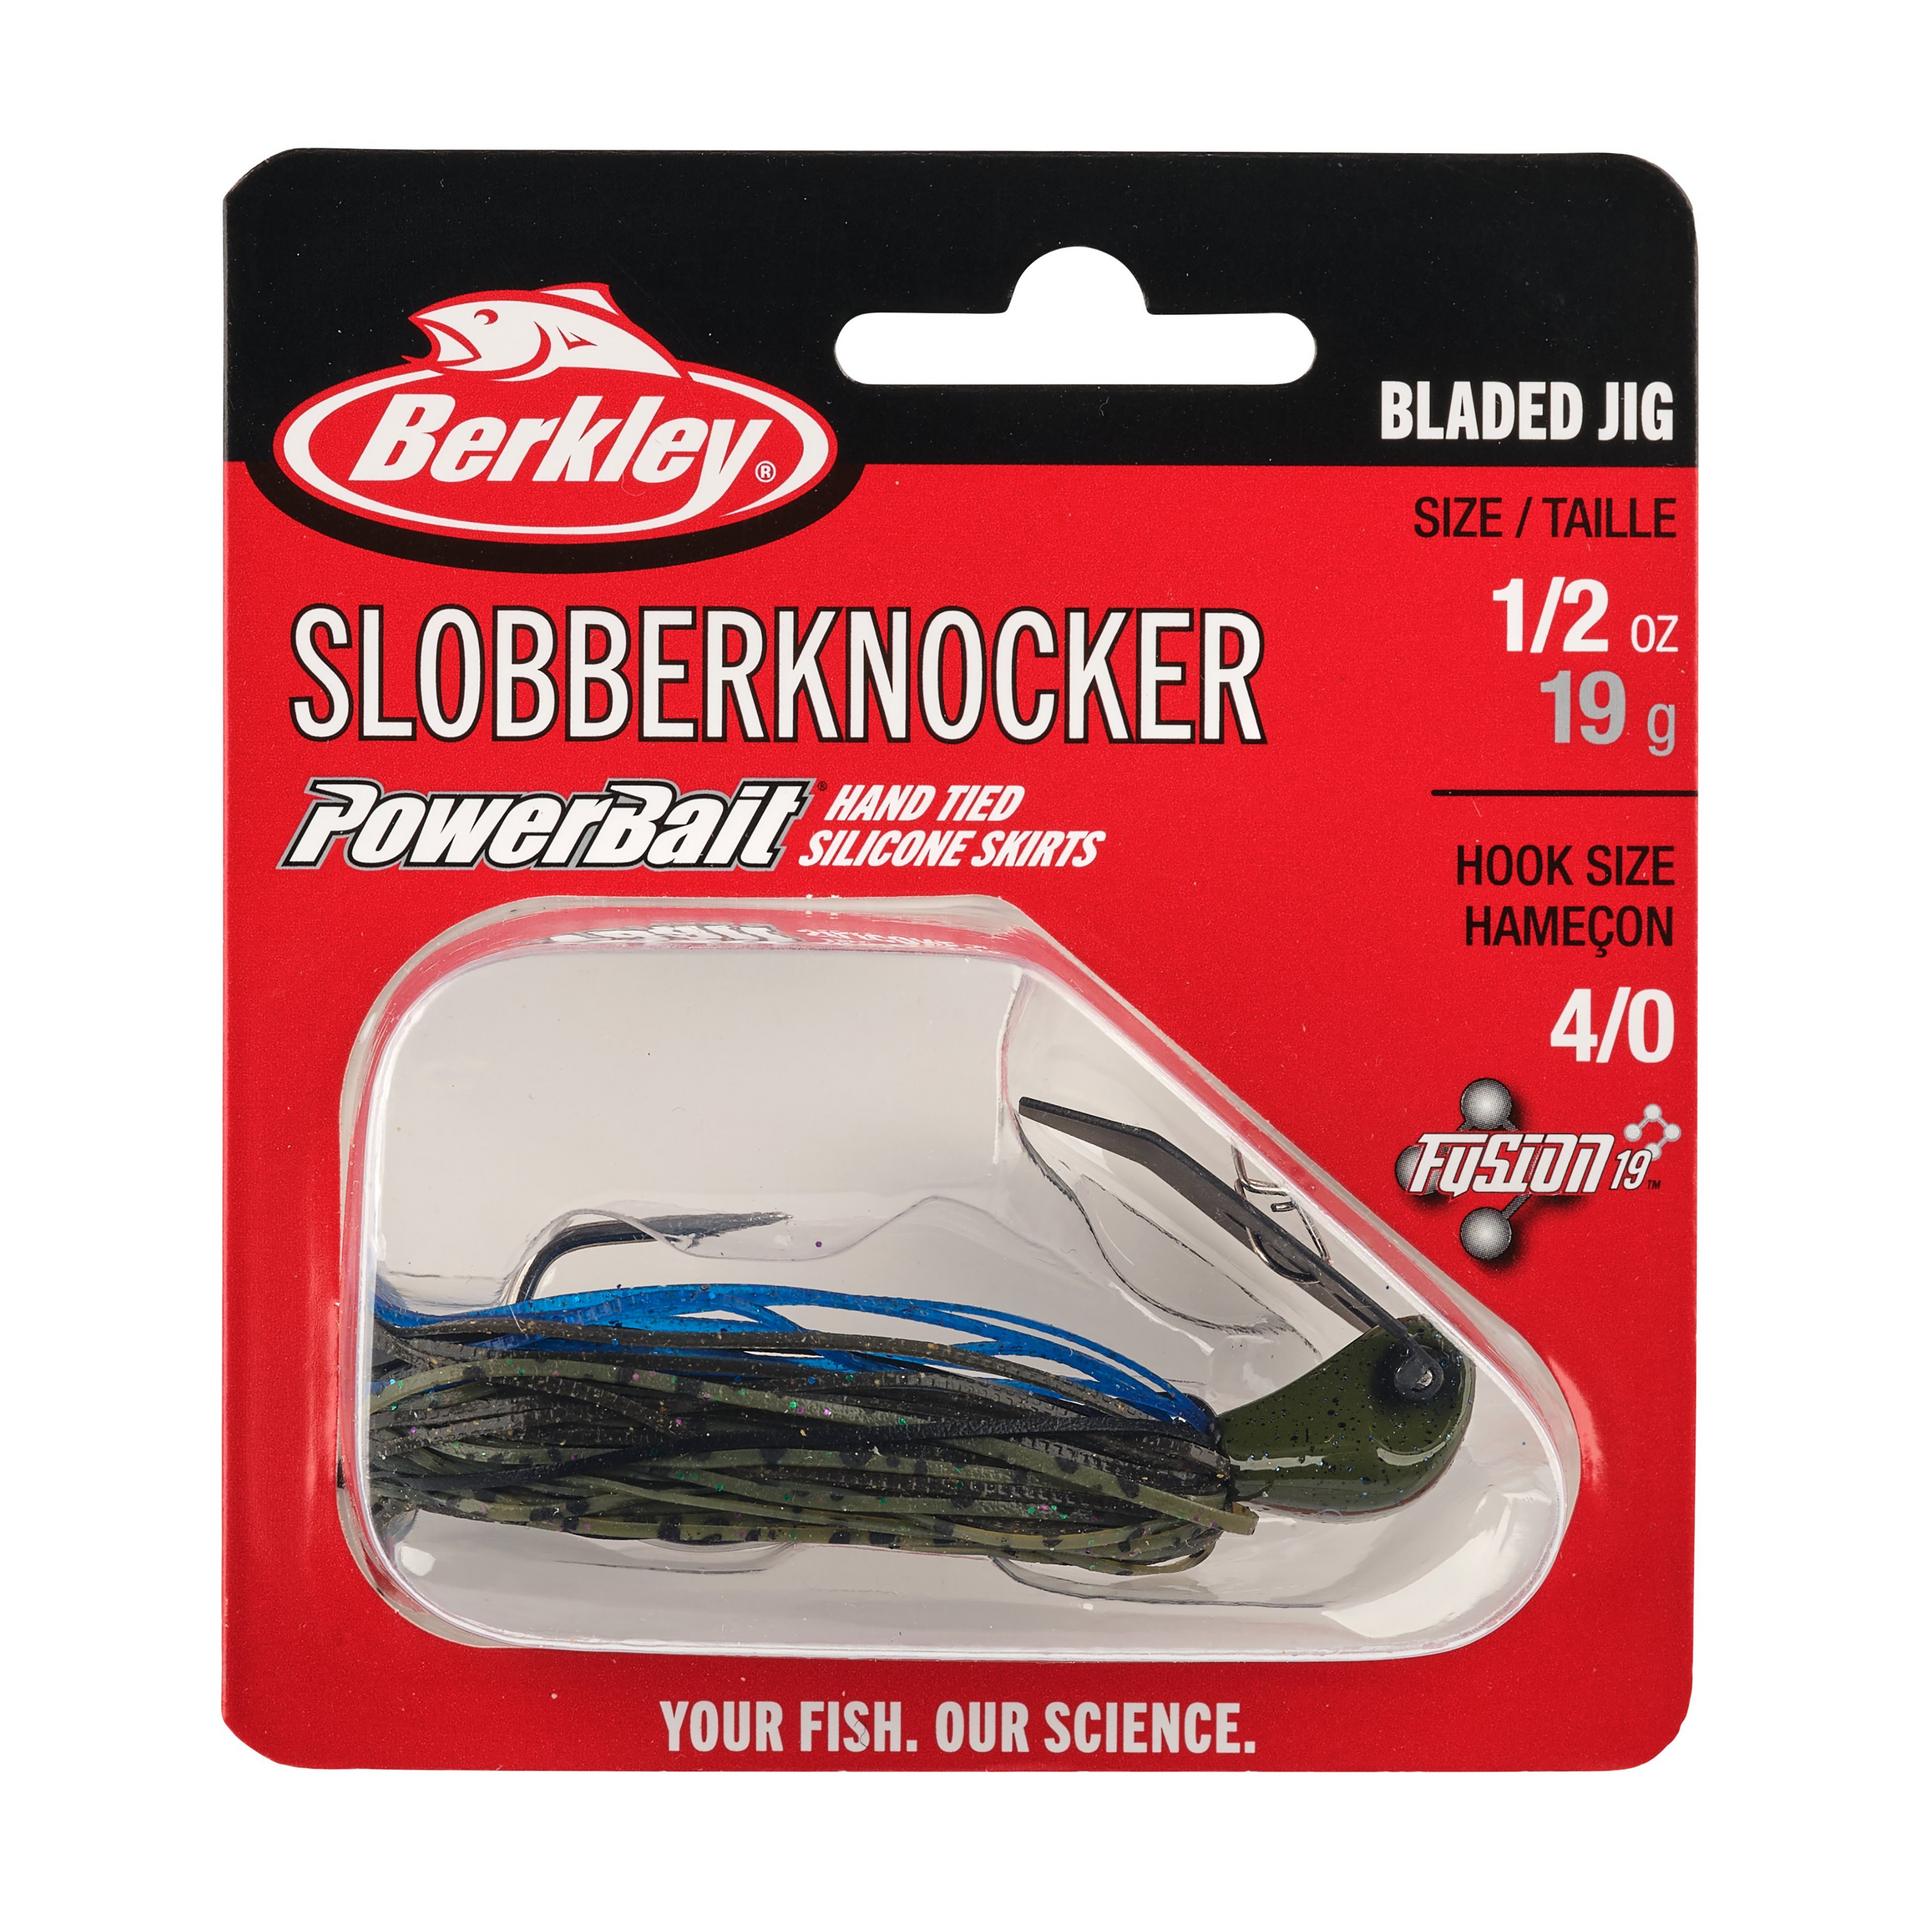 Berkley SlobberKnocker 1 2oz Bruised PKG | Berkley Fishing